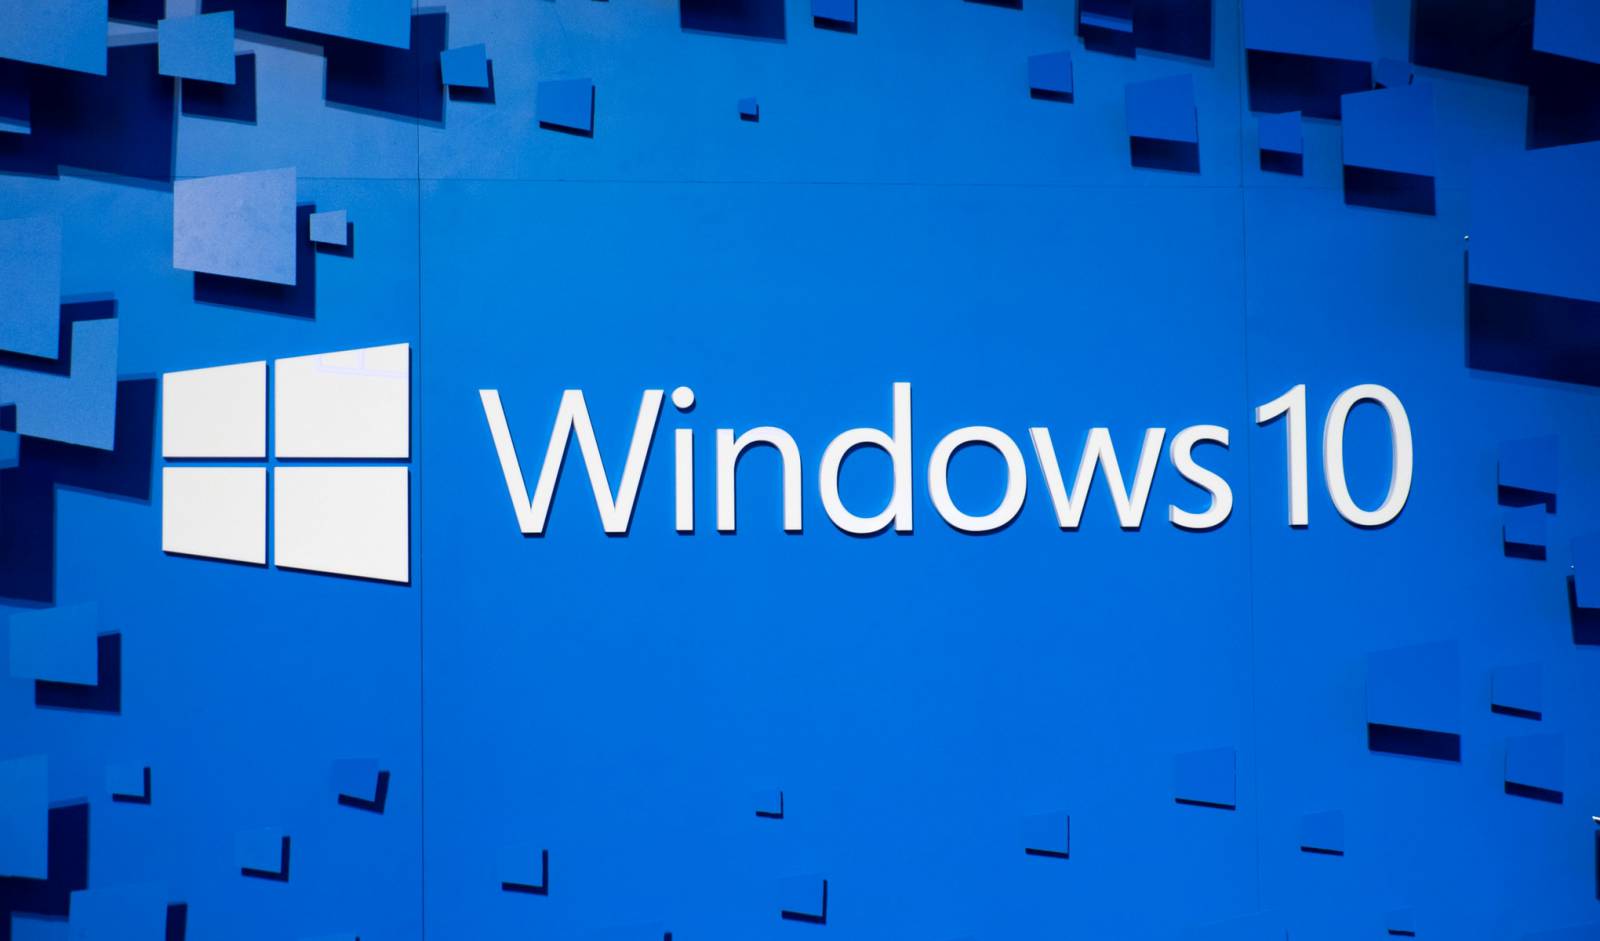 ÜBERRASCHUNG in Windows 10 mit einer Änderung, die Benutzer verblüffte